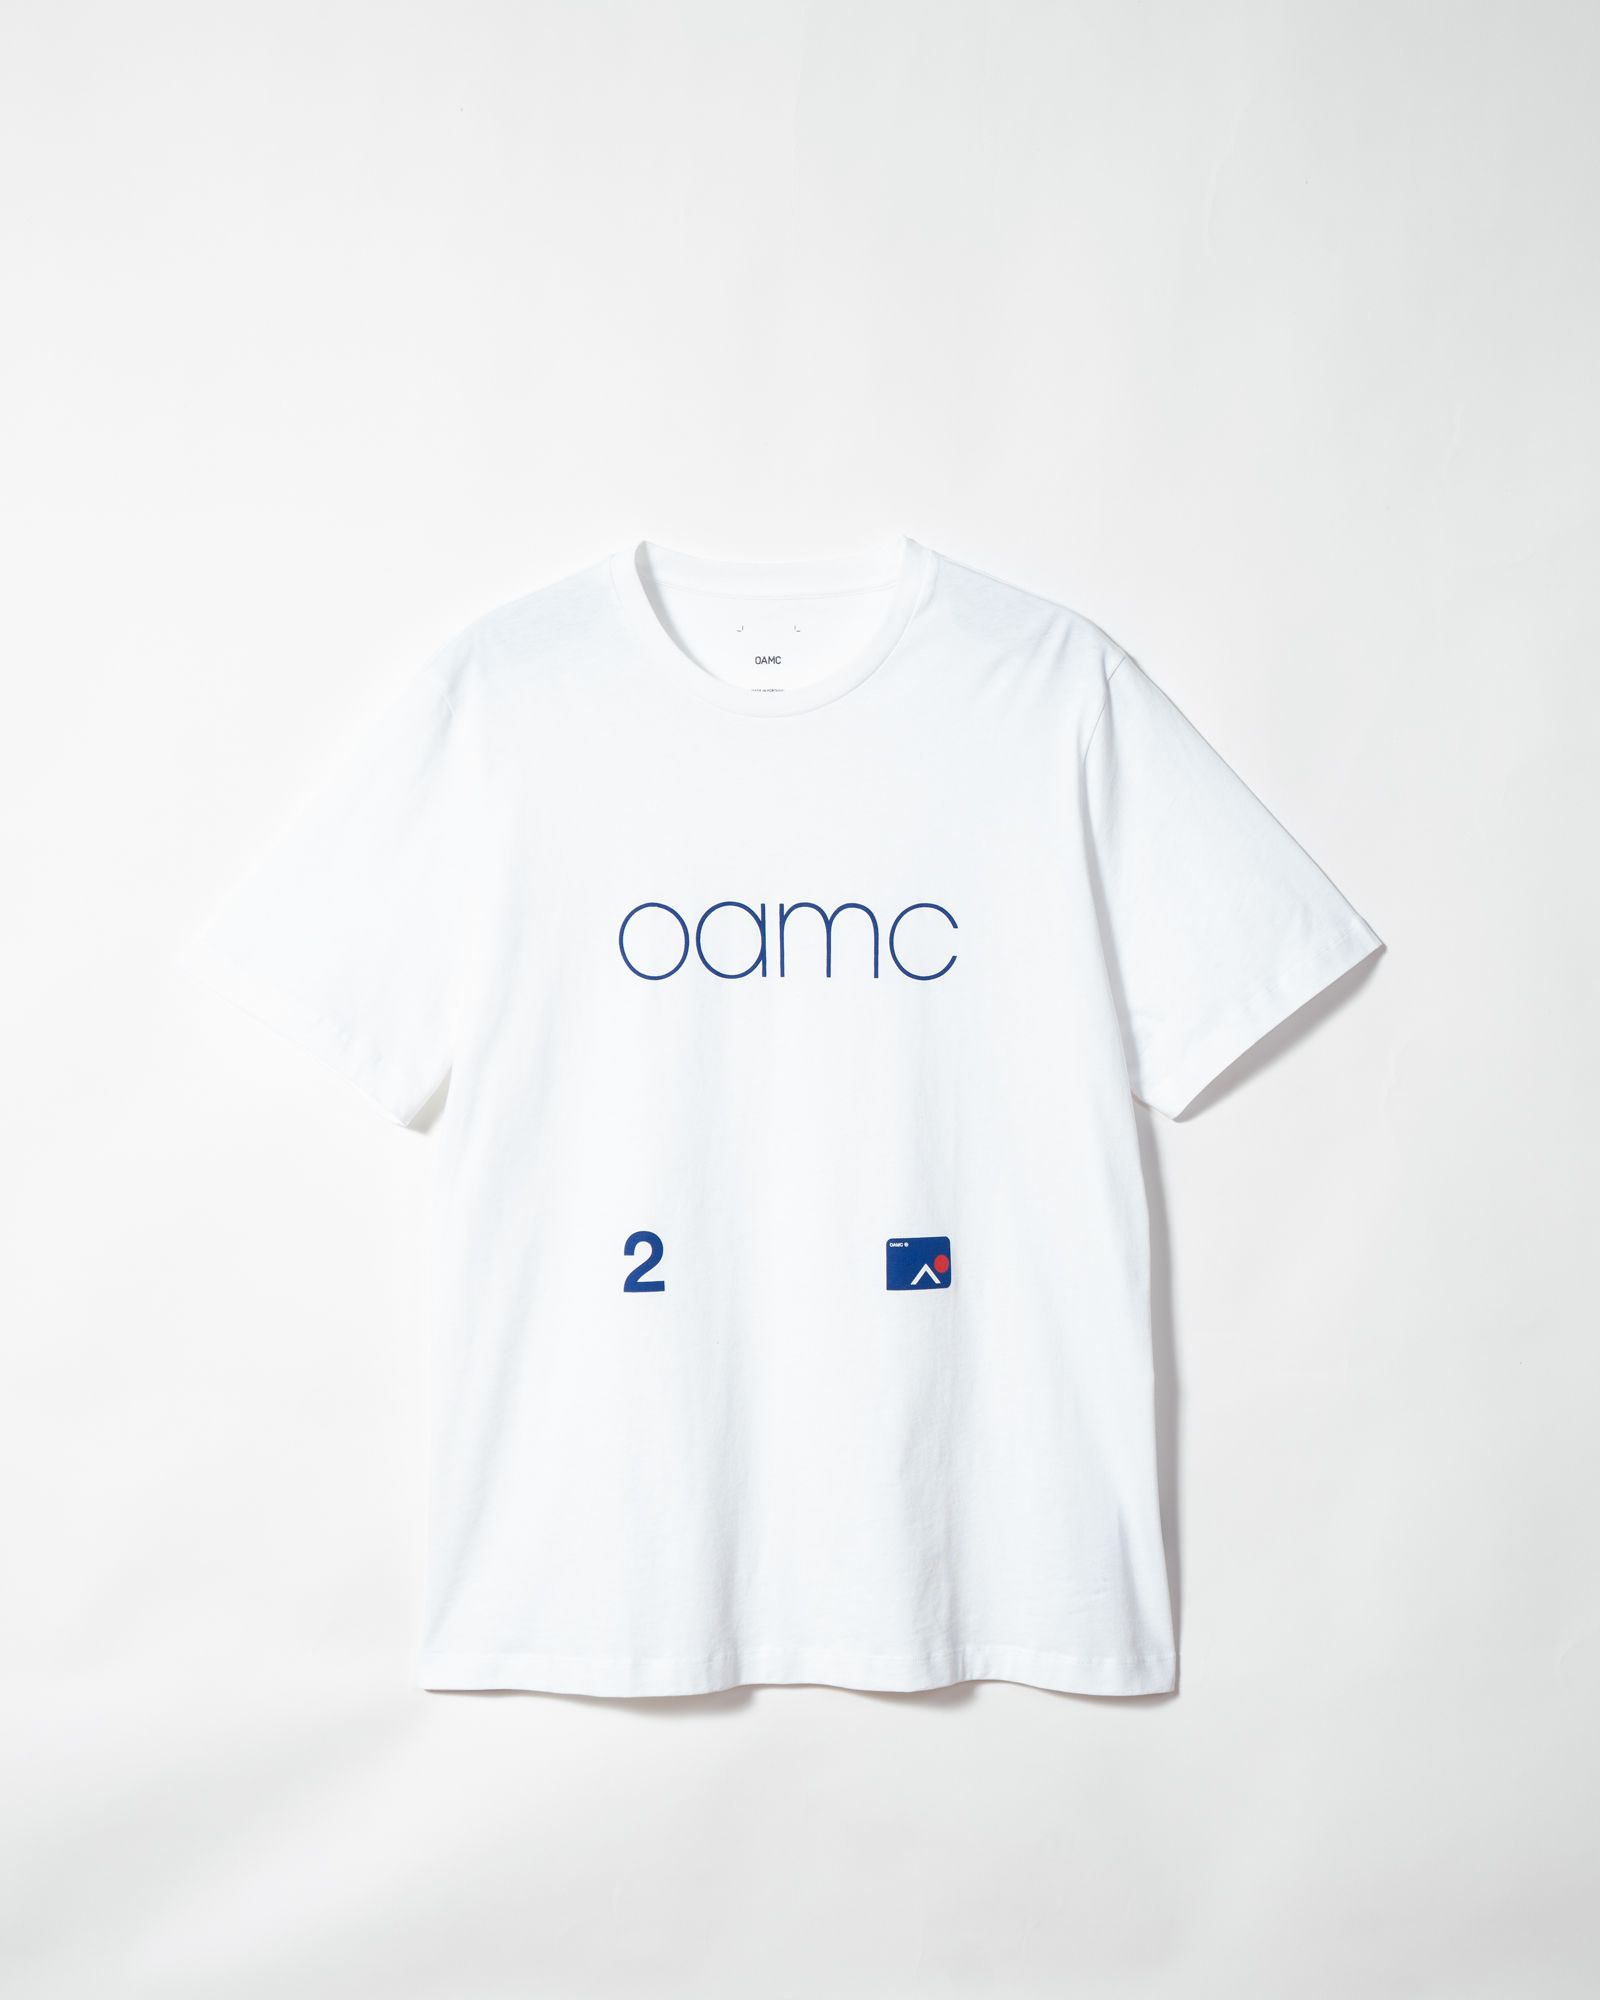 【新品正規品】OAMC ロゴプリントTシャツ サイズLオーベルジュ